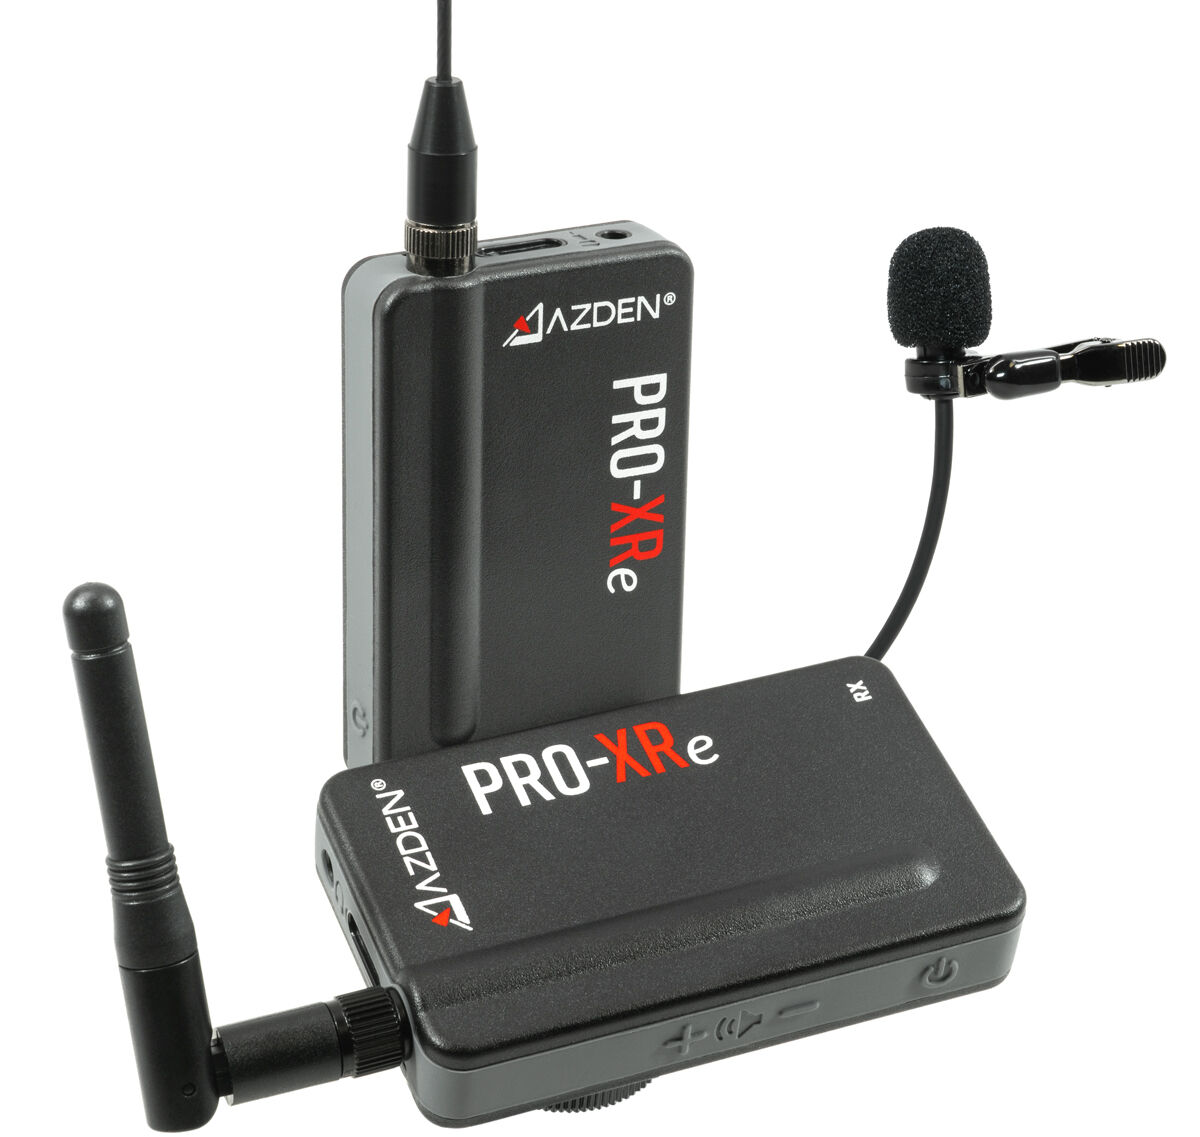 AZDEN Microfone Pro-Xre Sem Fio Compact 2.4 Ghz Alcance 150m